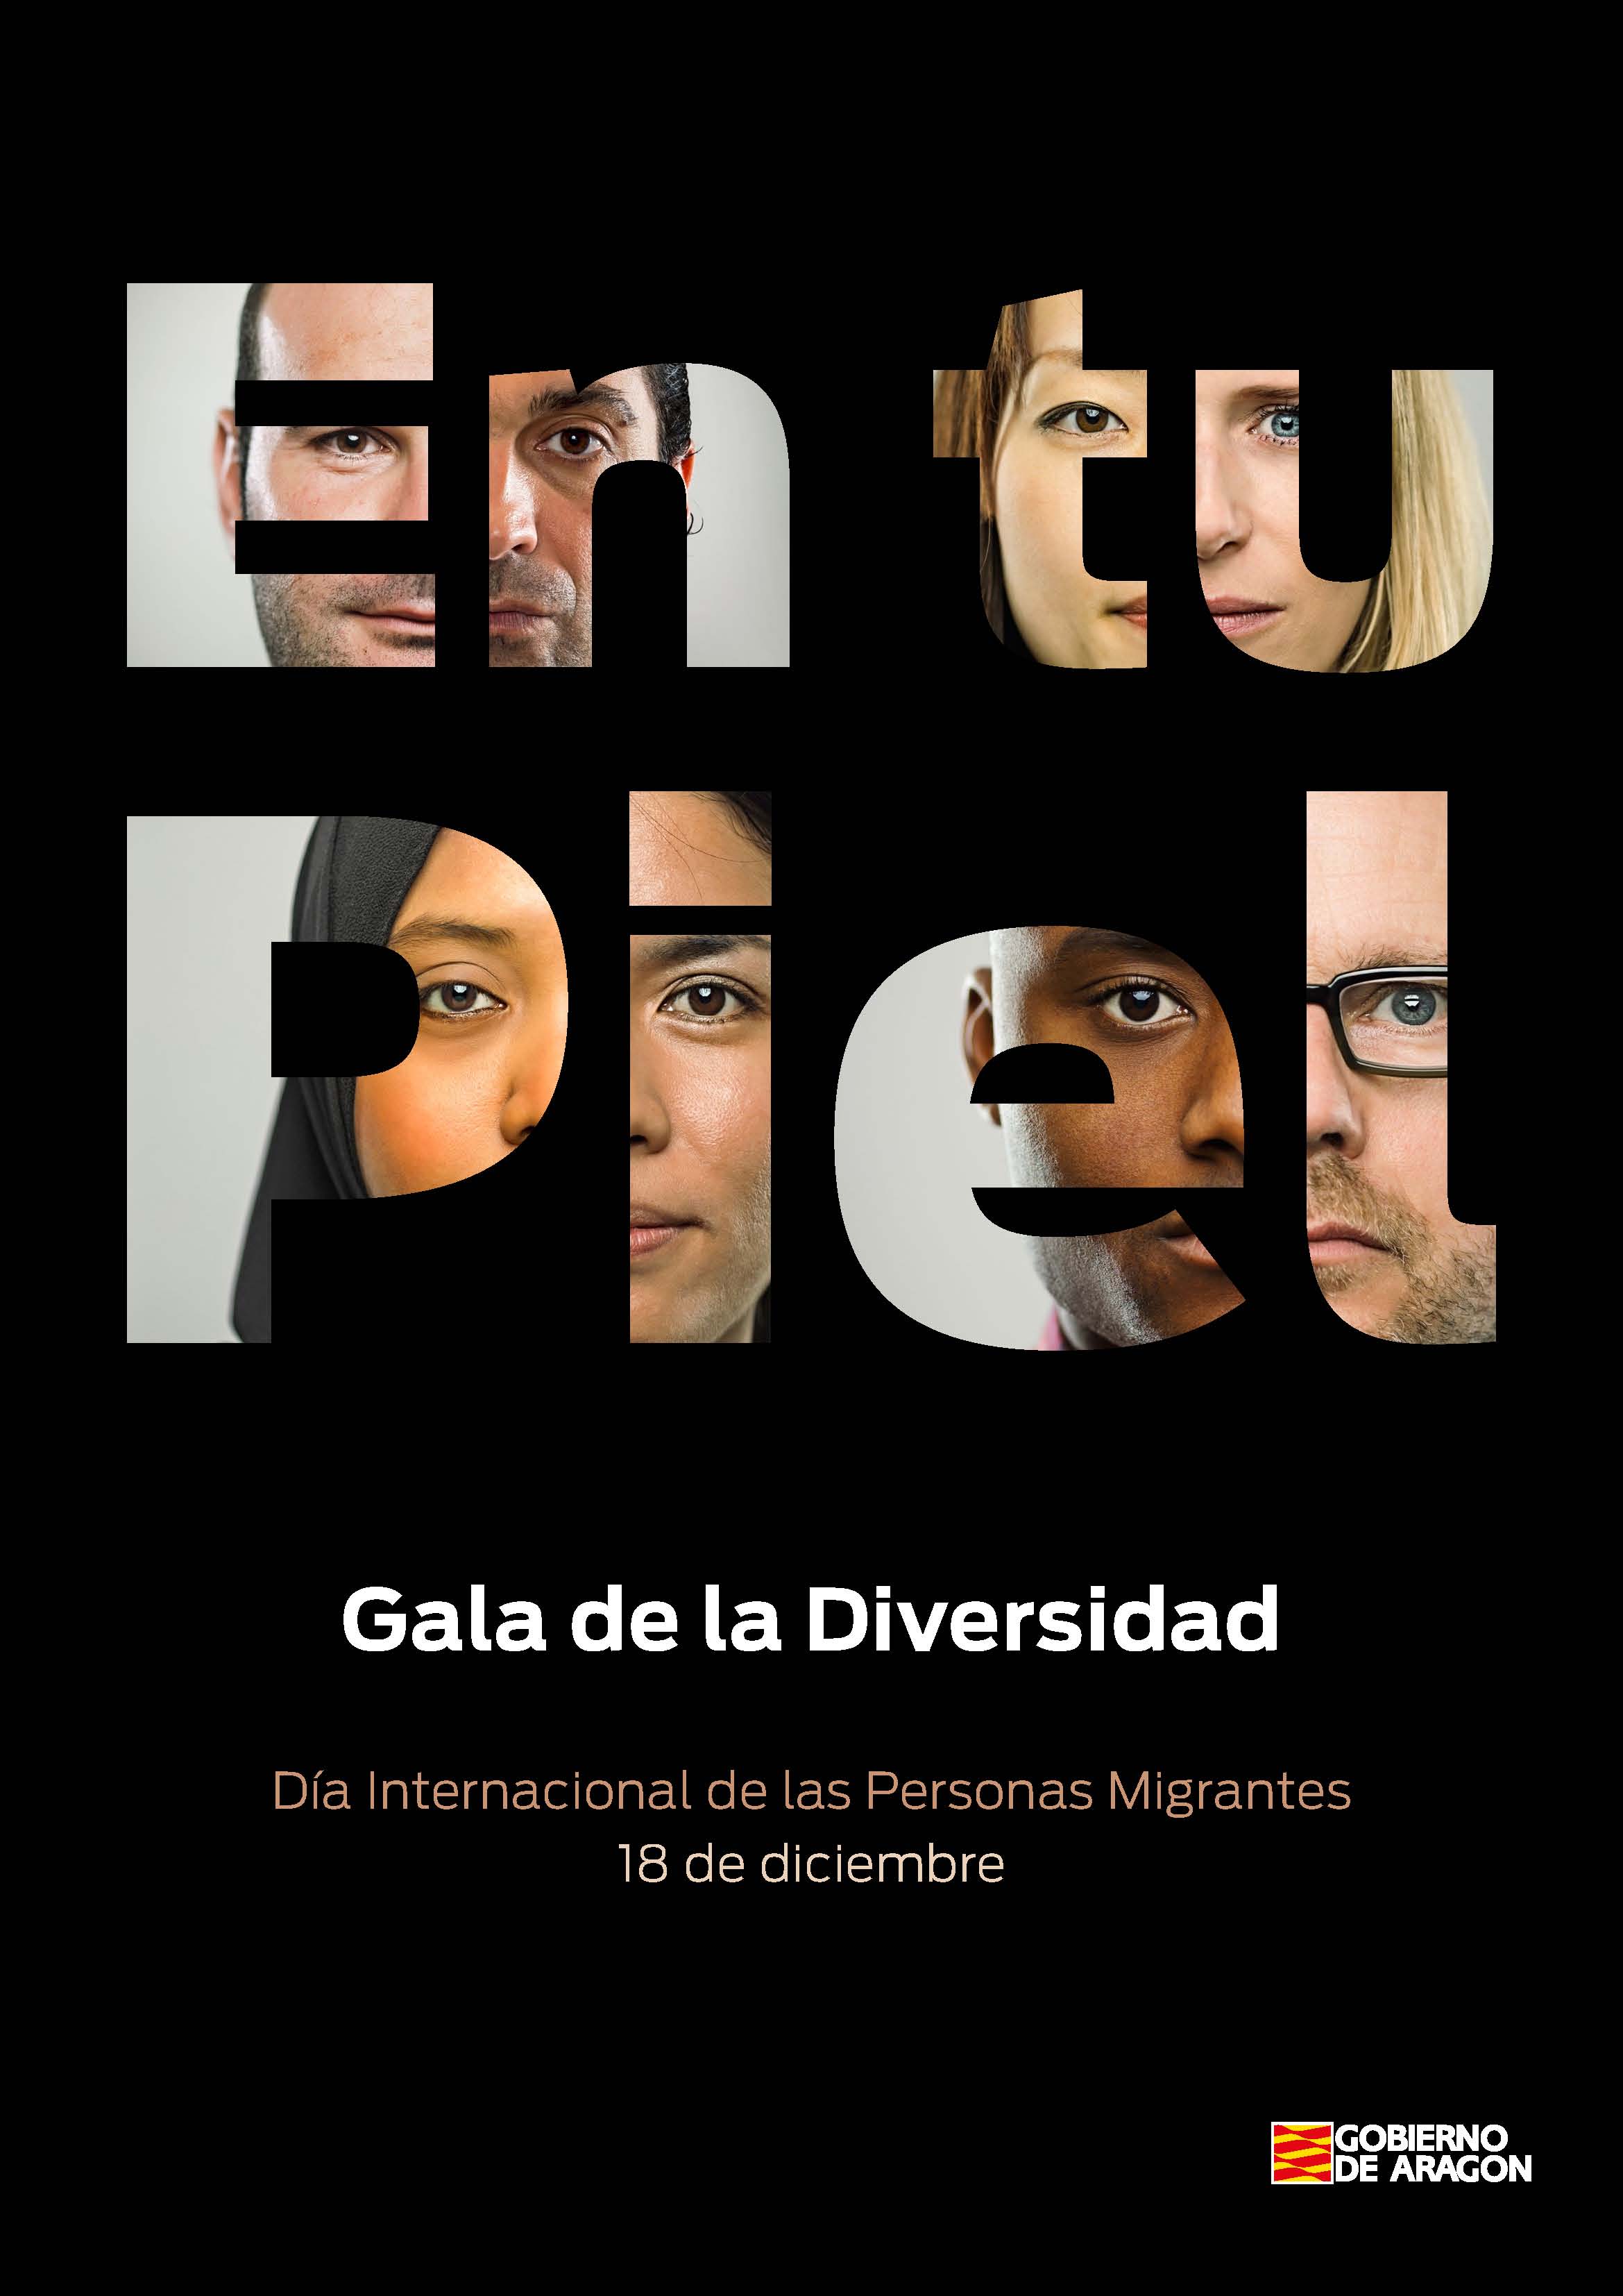 Cartel En tu piel. Gala de la diversidad. Día Internacional delas personas migrantes. 18 de diciembre. Gobierno de Aragón